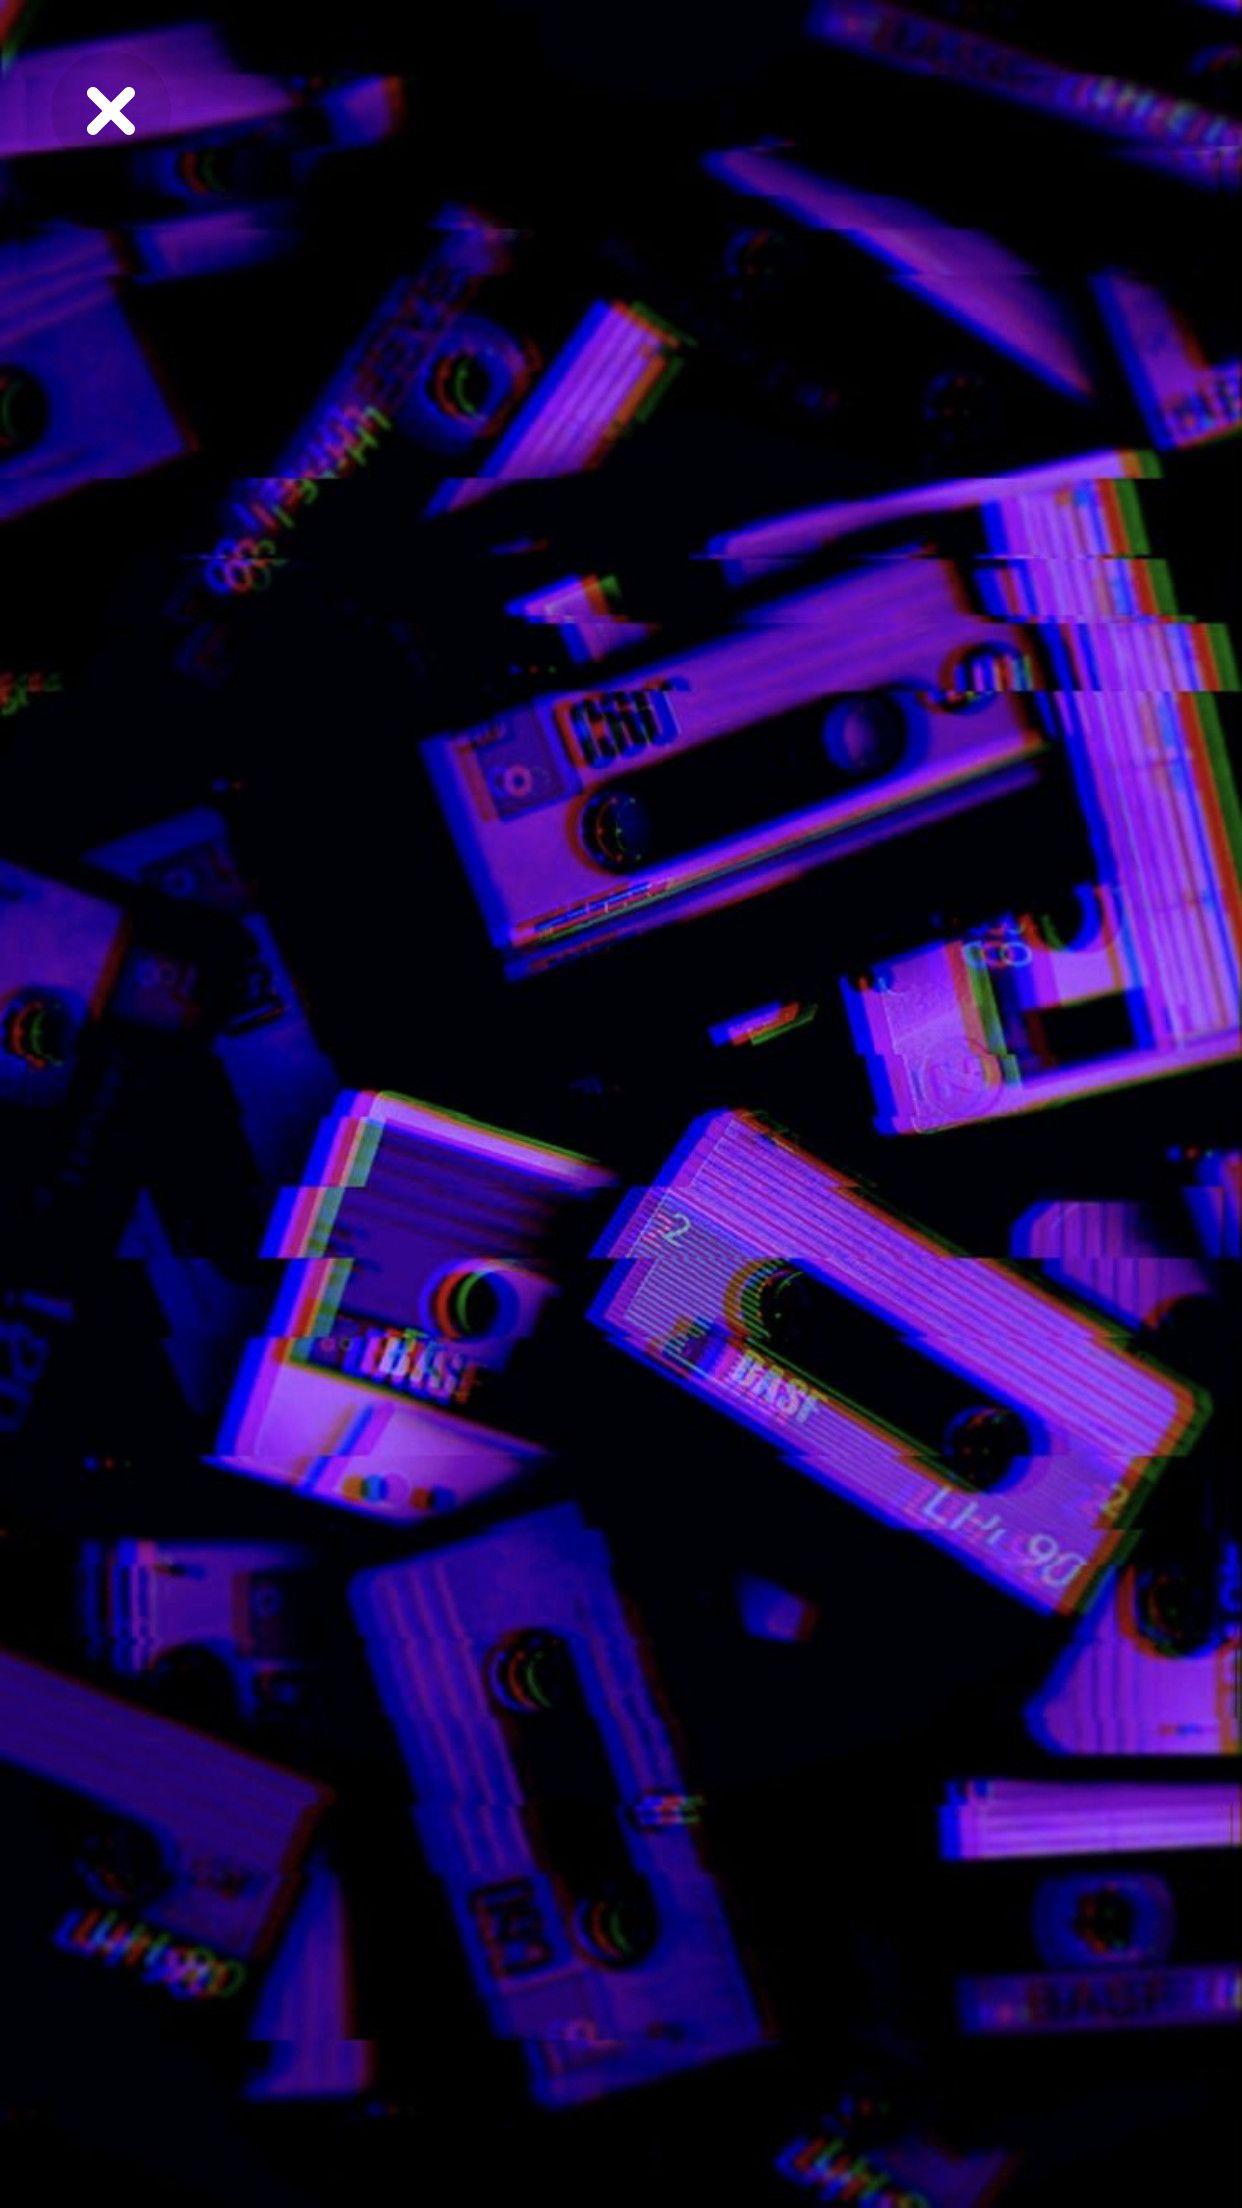 VHS Vaporwave iPhone Wallpaper Free VHS Vaporwave iPhone